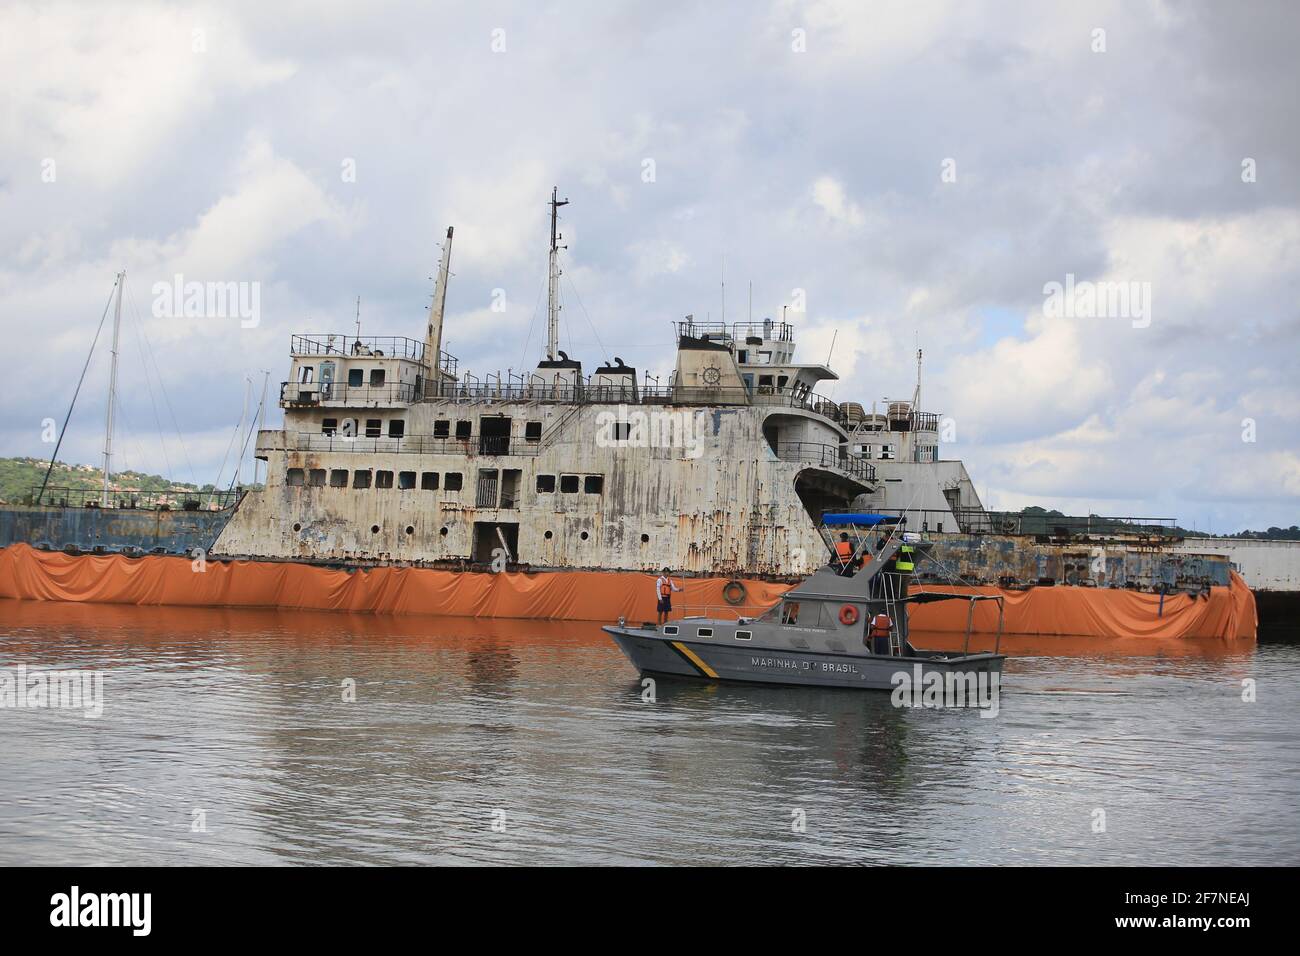 salvador, bahia / brasil - 8 de marzo de 2019: Chatarra del Ferry Monte  Serrat e Ipuacu, visto anclado en el puerto deportivo de Aratu. Los barcos  que hicieron los cros Fotografía de stock - Alamy